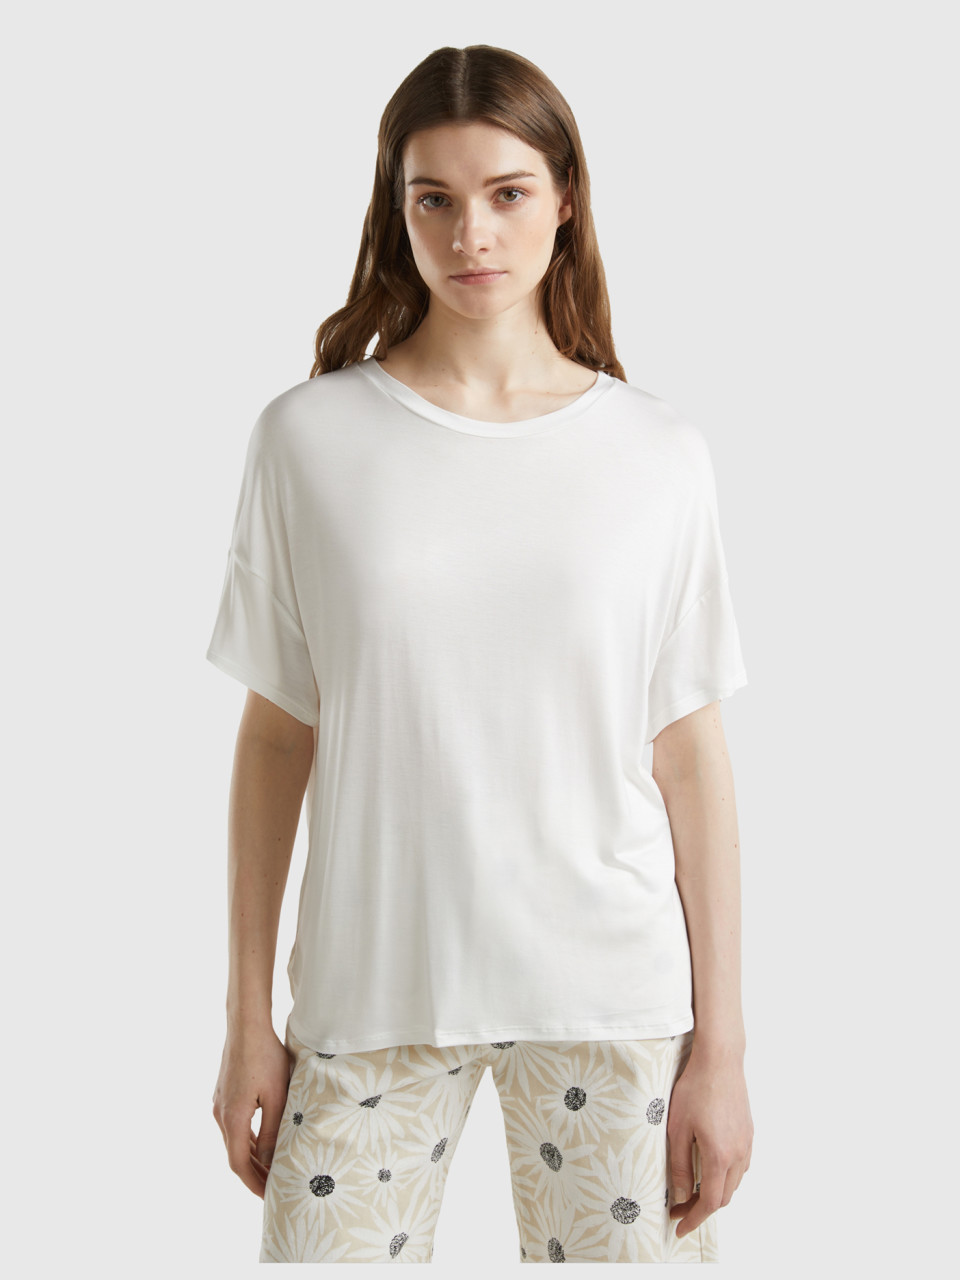 Benetton, Camiseta De Viscosa Sostenible Elástica, Blanco Crema, Mujer